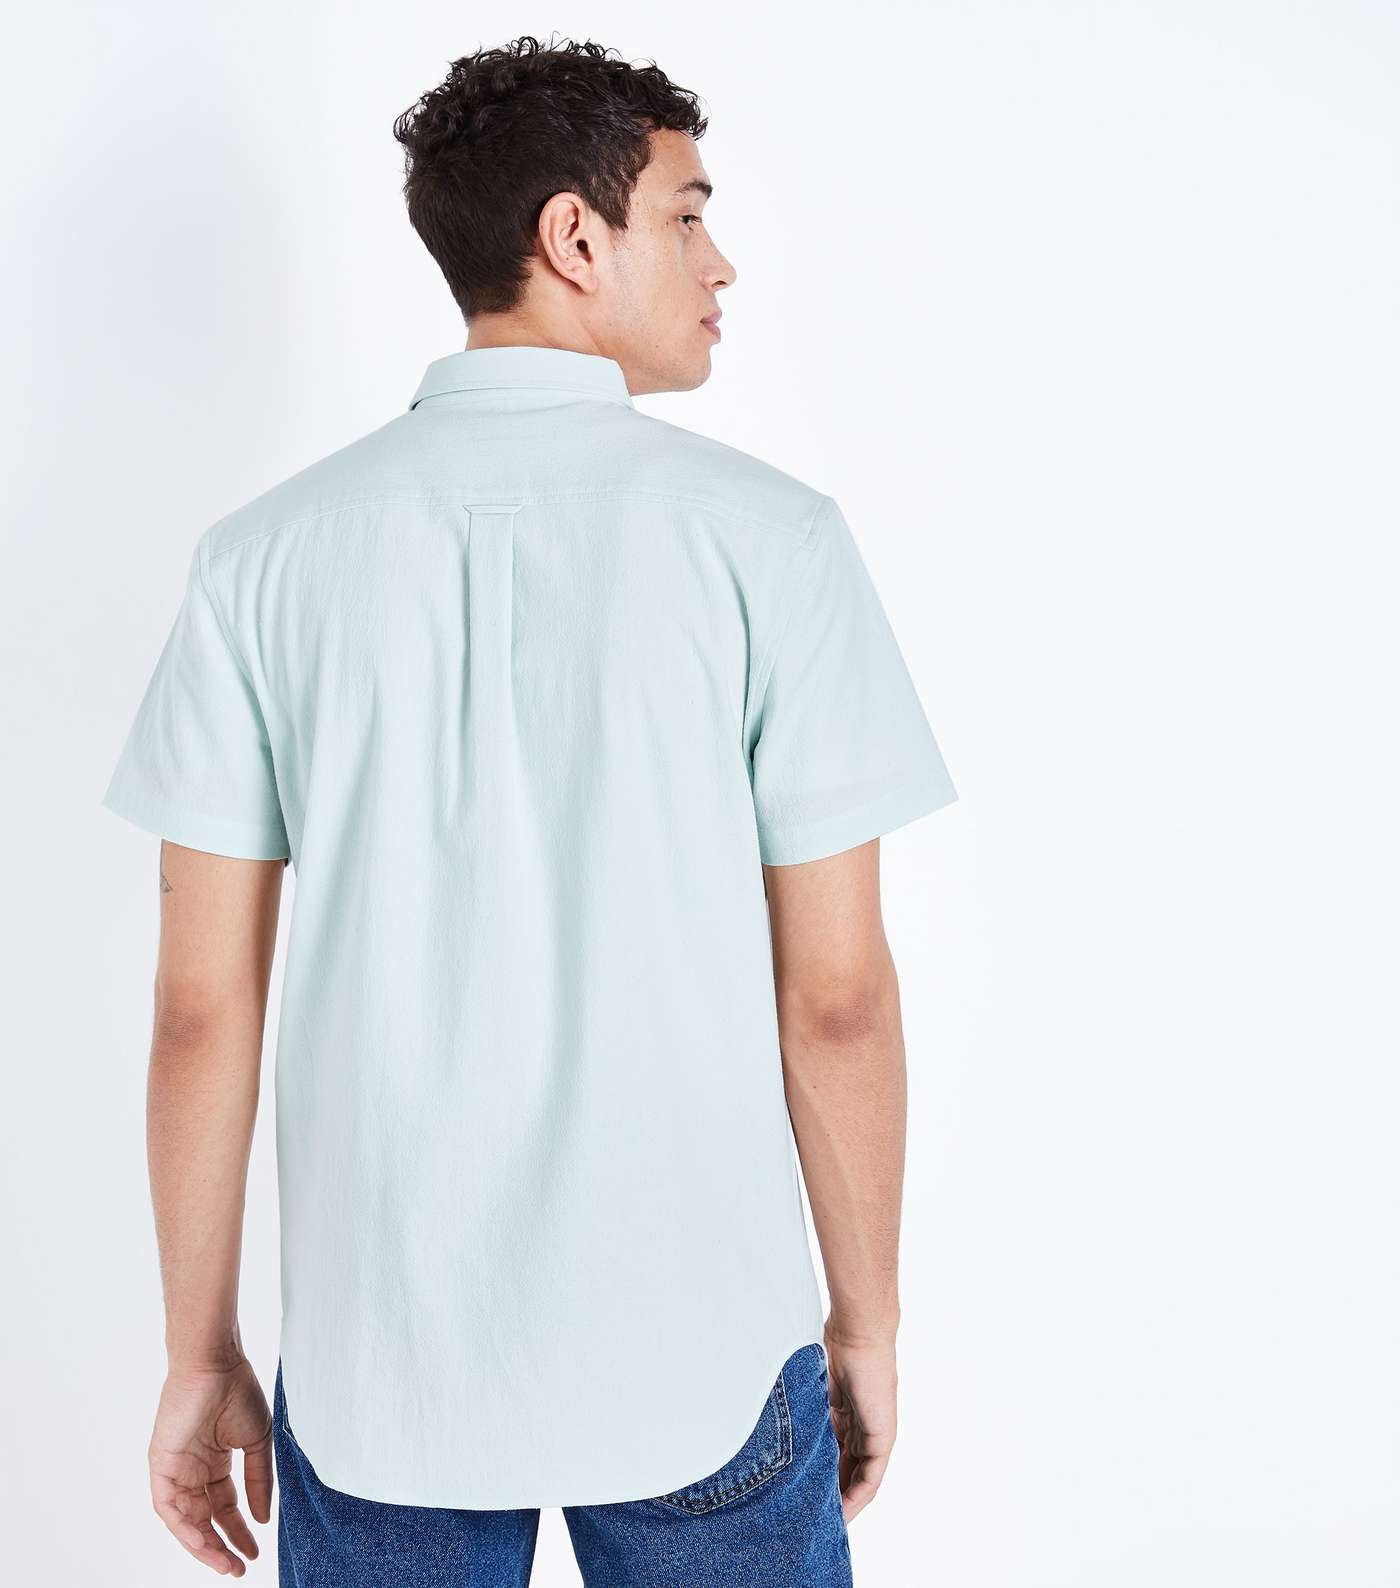 Mint Green Textured Short Sleeve Shirt Image 3